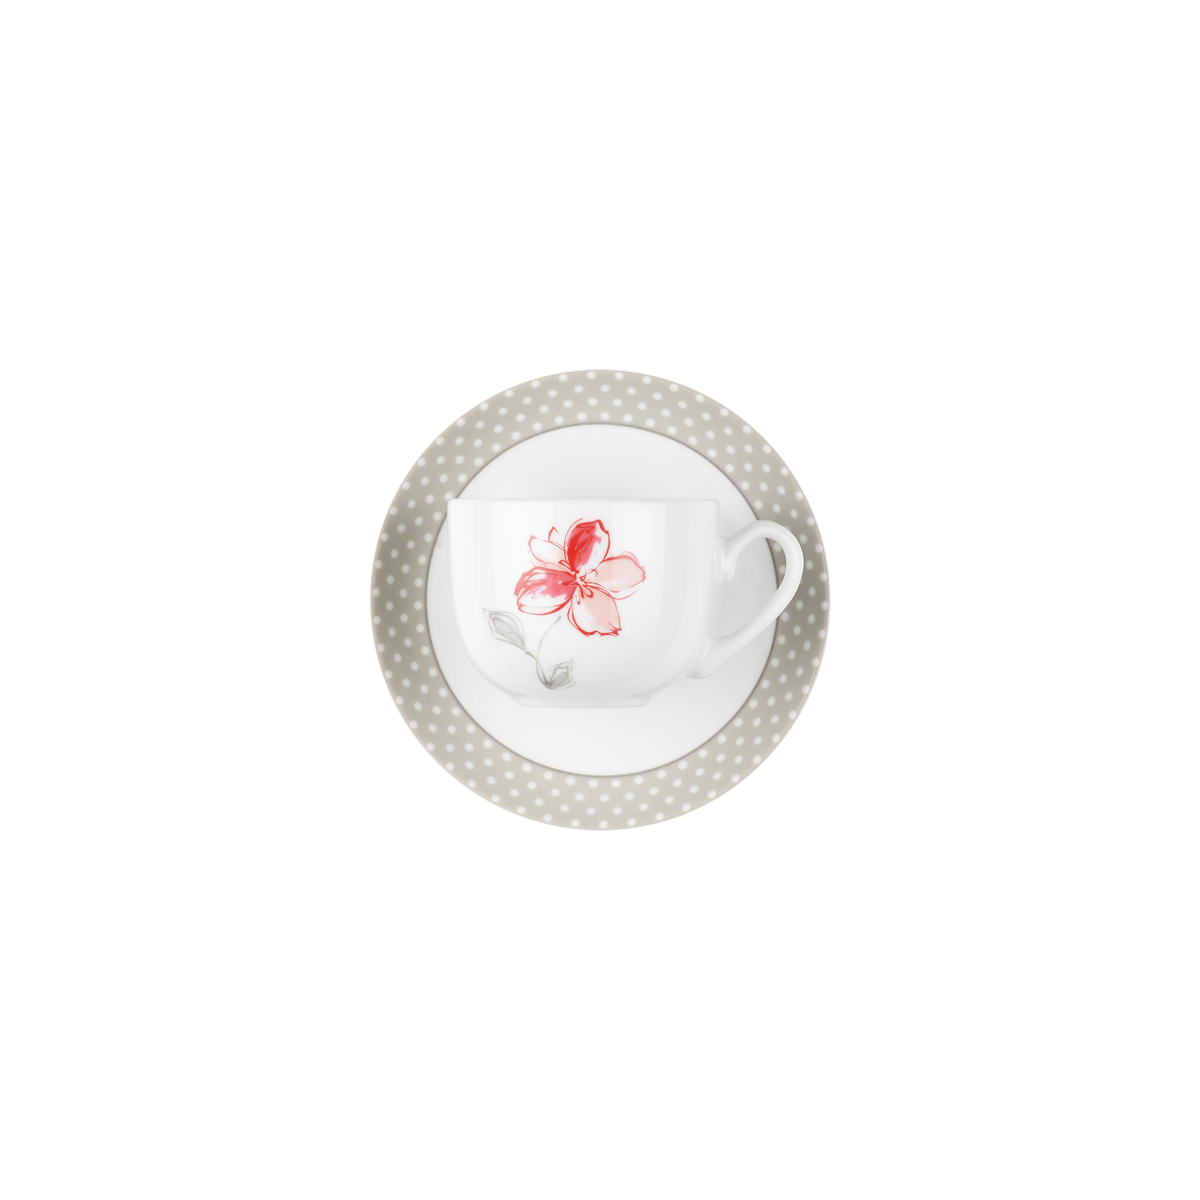 سرویس چینی 12 پارچه چای خوری والنسیا قرمز